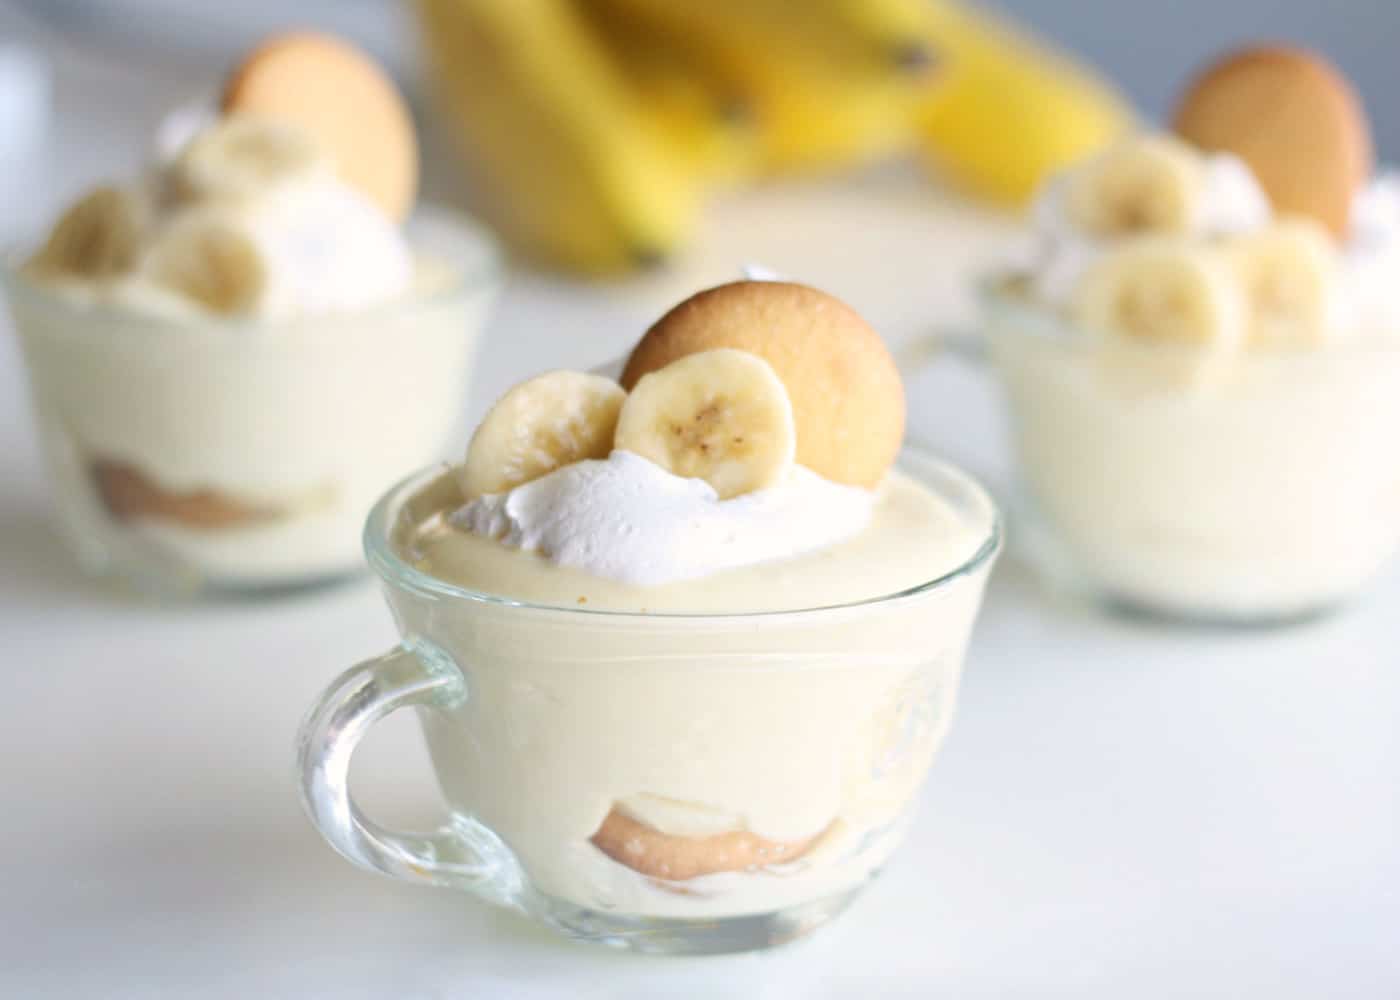 Nilla wafer banana pudding recipe